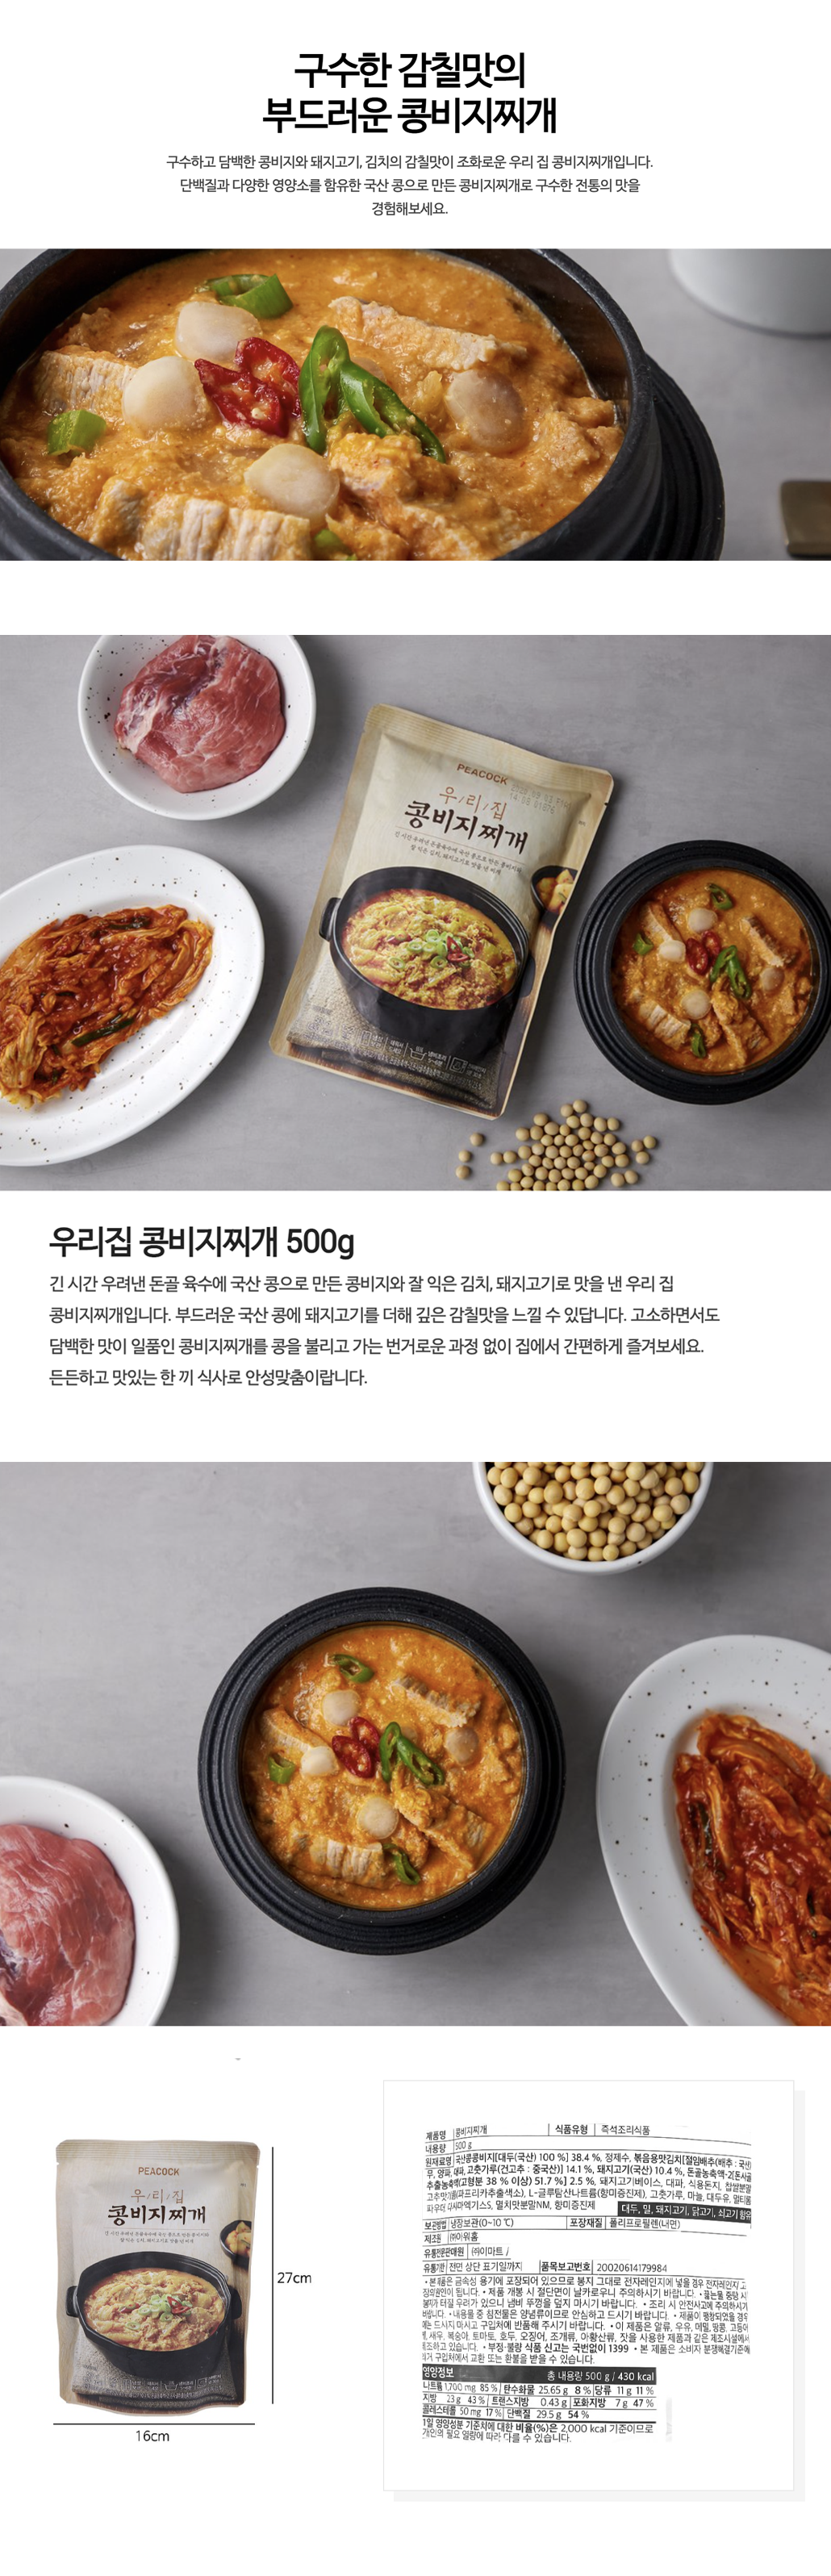 韓國食品-[Peacock] 豬肉豆渣湯 500g